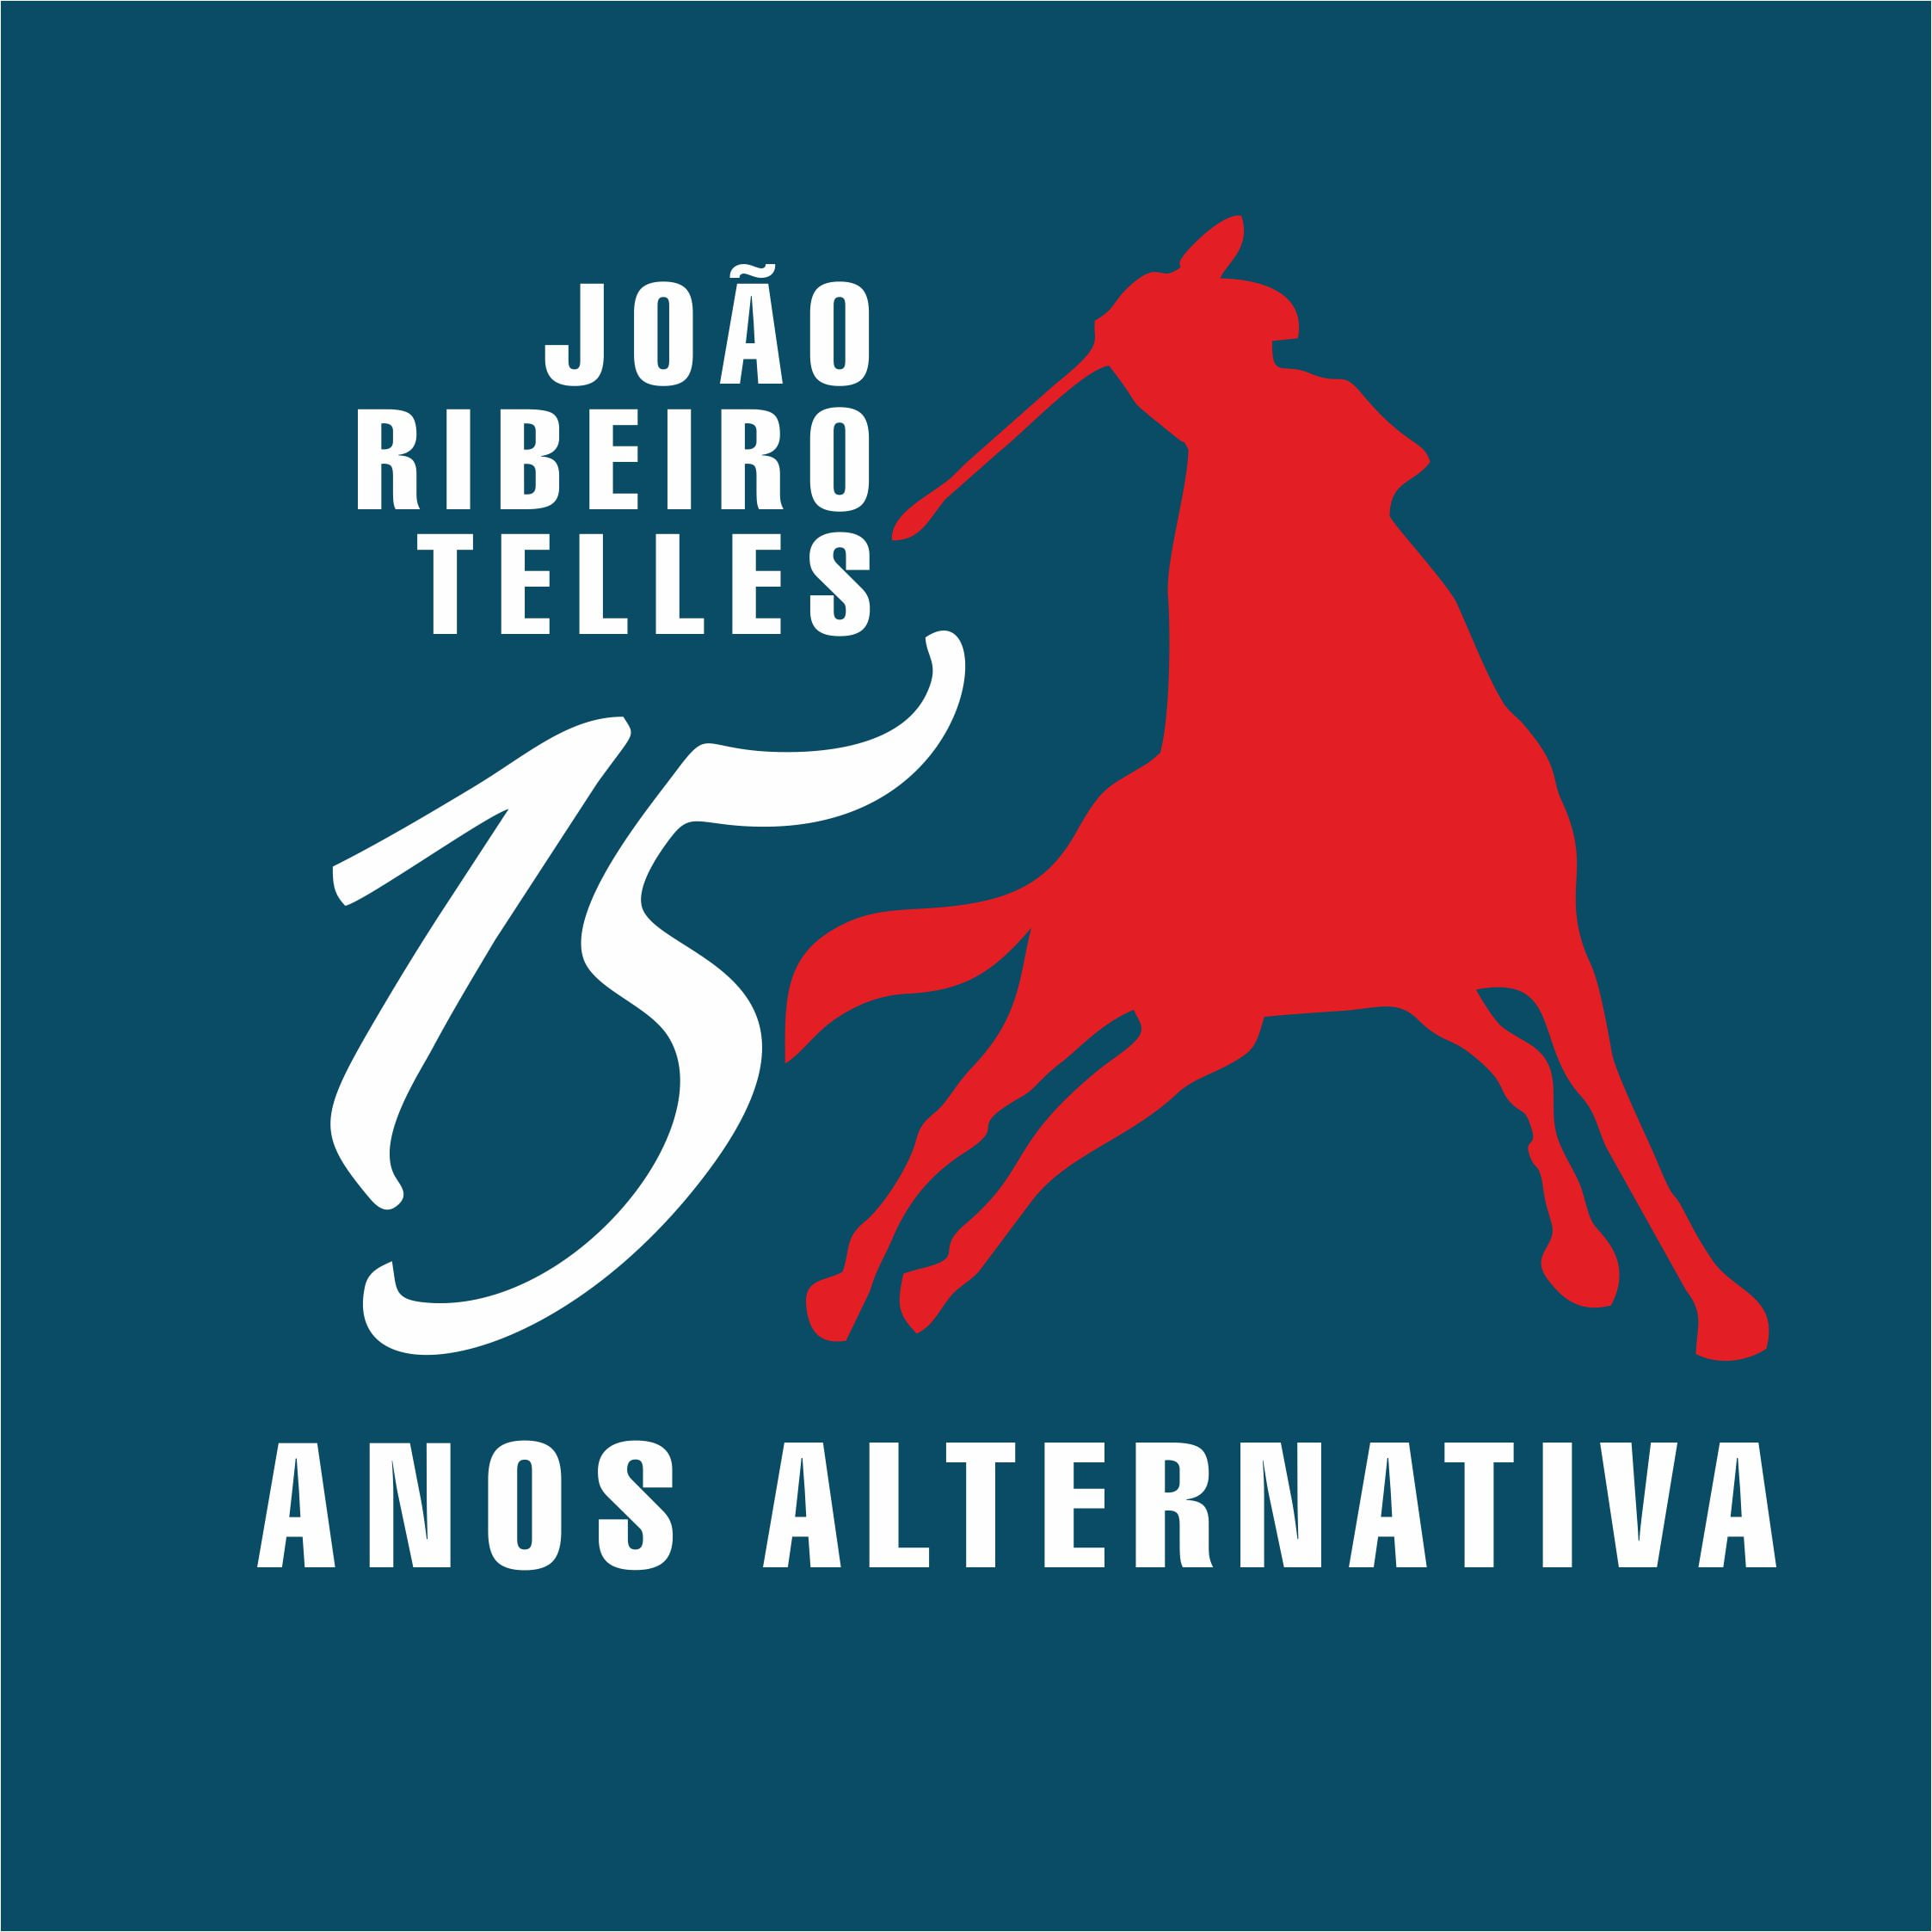 João Ribeiro Telles – Comunicado